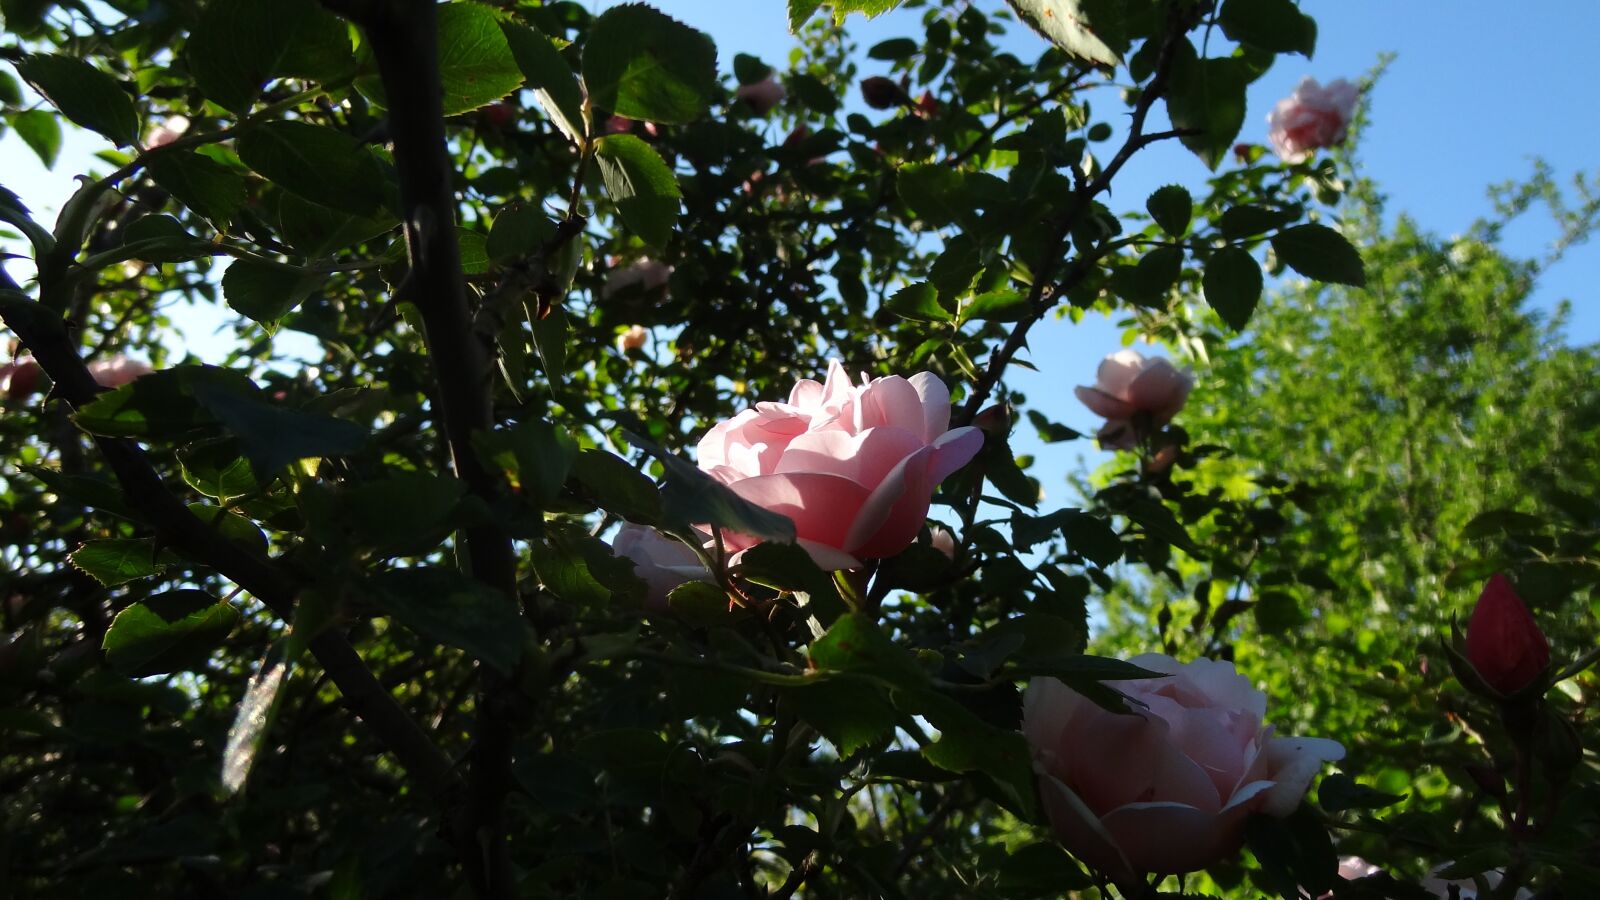 Sony Cyber-shot DSC-HX9V sample photo. Pink, flower, sun photography